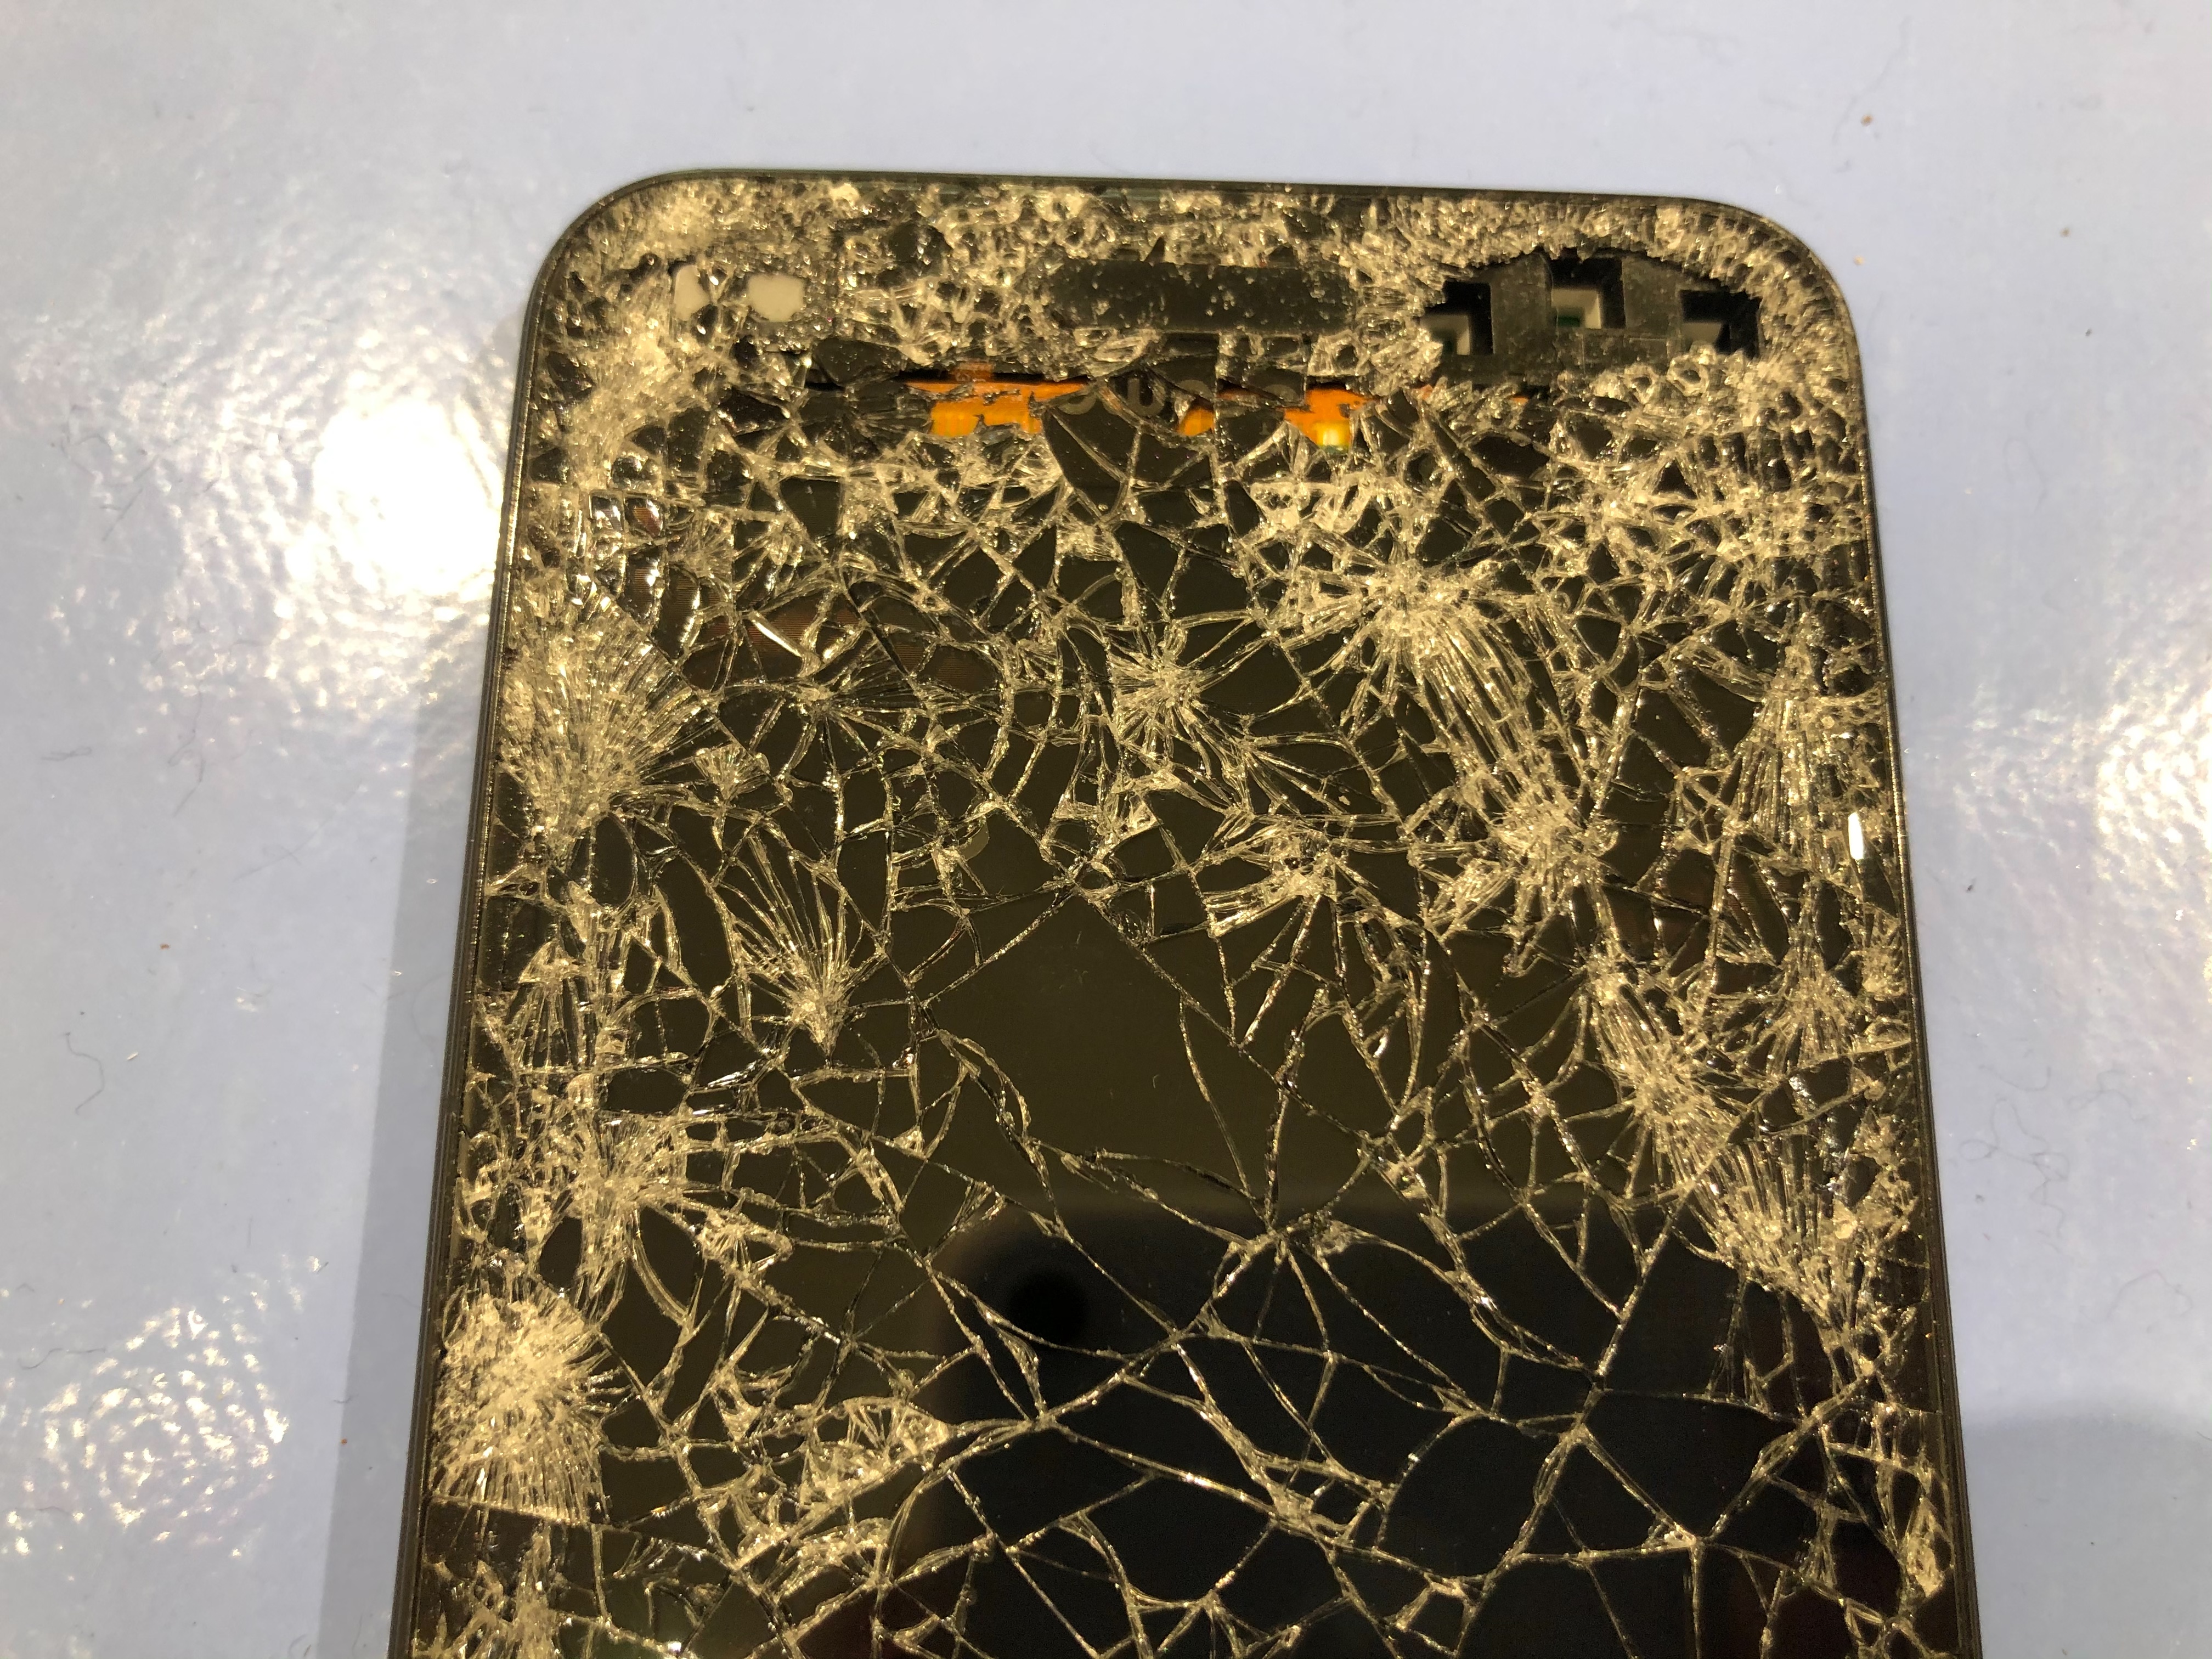 車に轢かれて画面が粉々になった Aquos Sence のデータを救出しました Xperia Galaxy Aquos Zenfone Huawei修理のアンドロイドホスピタル